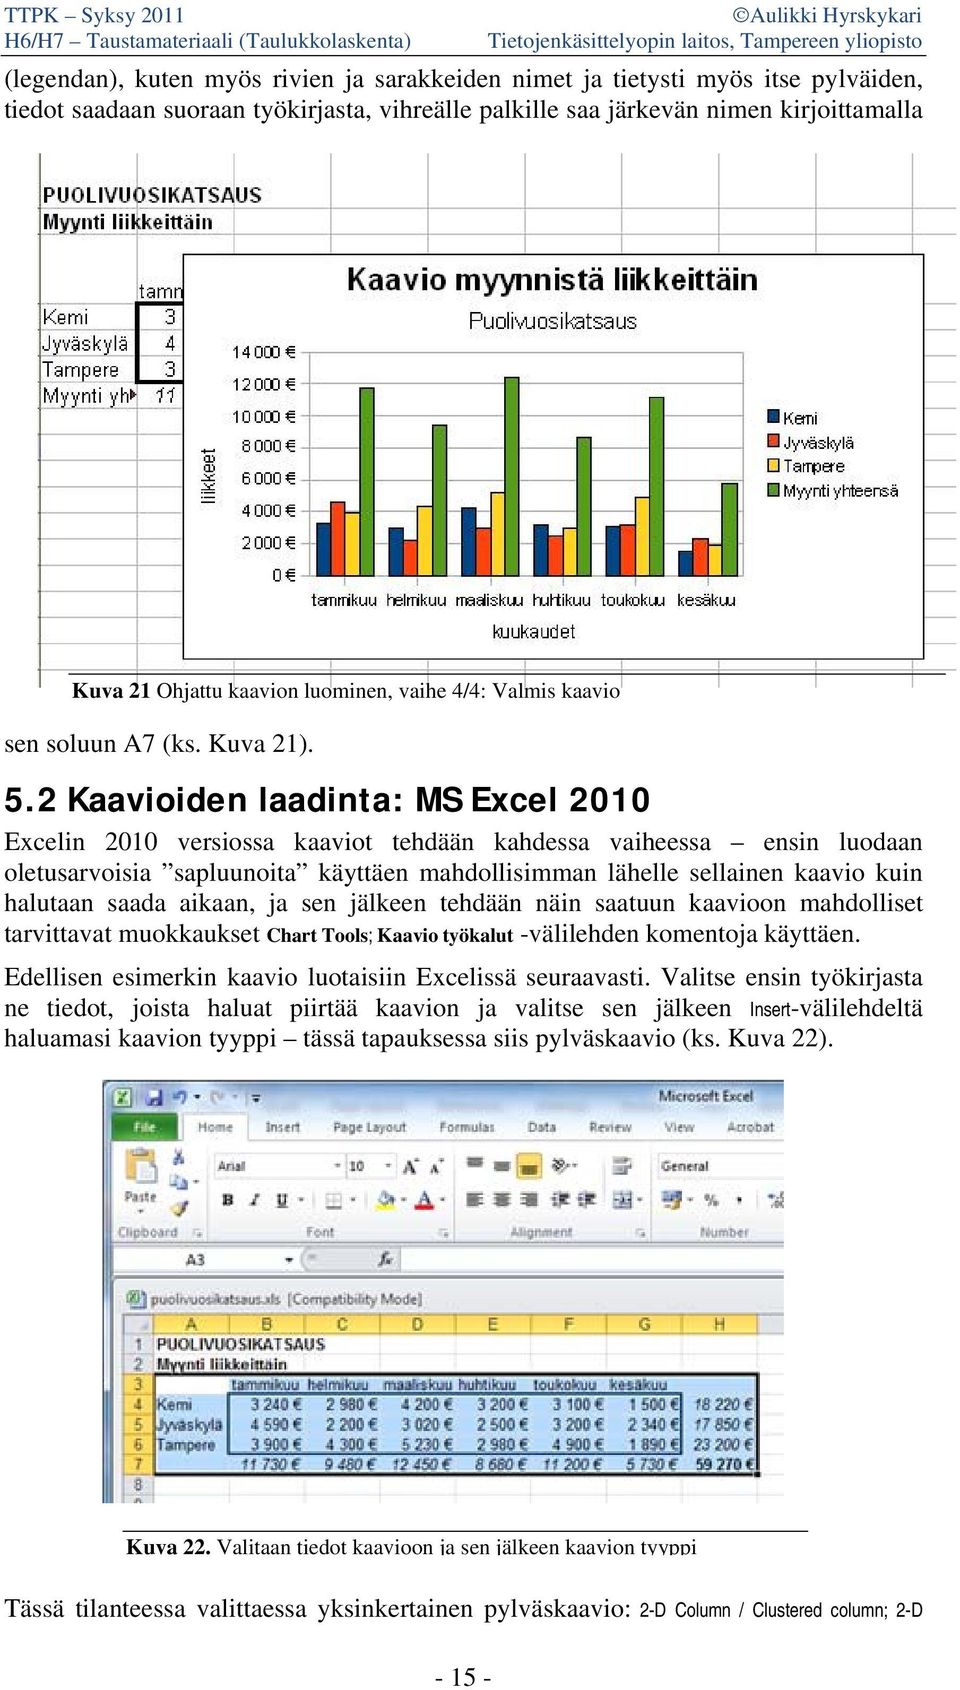 2 Kaavioiden laadinta: MS Excel 2010 Excelin 2010 versiossa kaaviot tehdään kahdessa vaiheessa ensin luodaan oletusarvoisia sapluunoita käyttäen mahdollisimman lähelle sellainen kaavio kuin halutaan